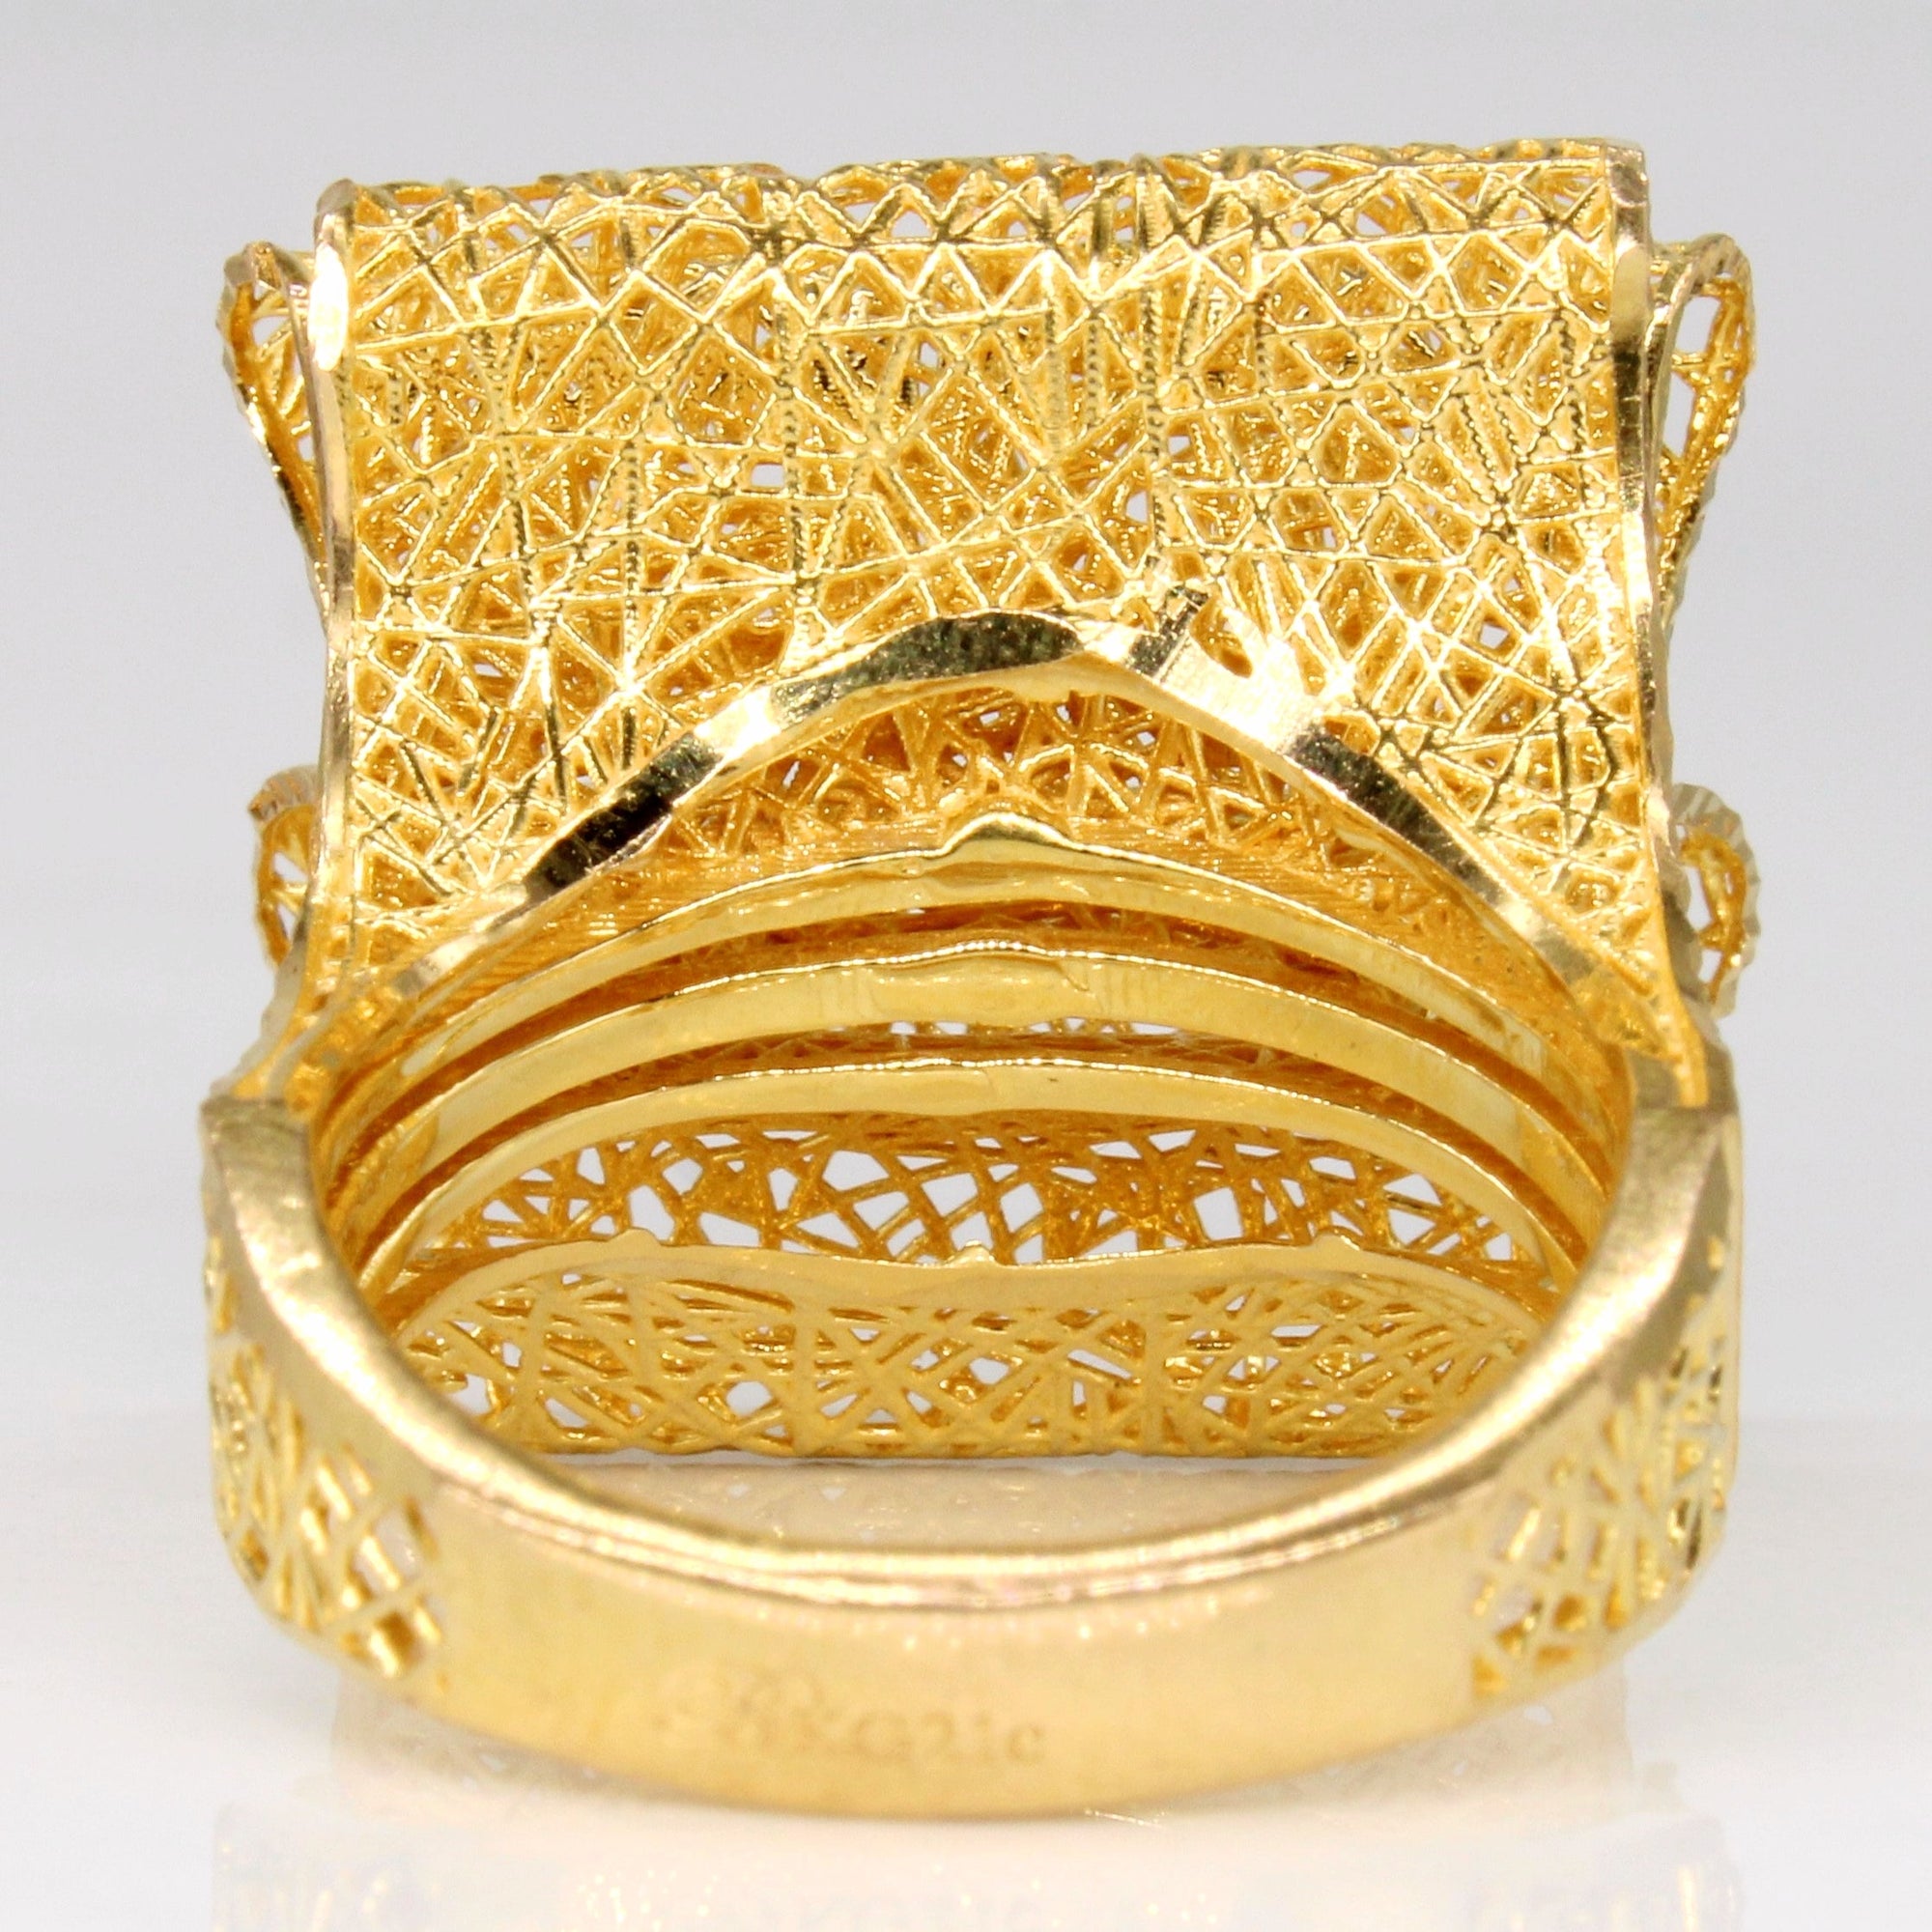 21k Yellow Gold Lattice Ring | SZ 7.75 |